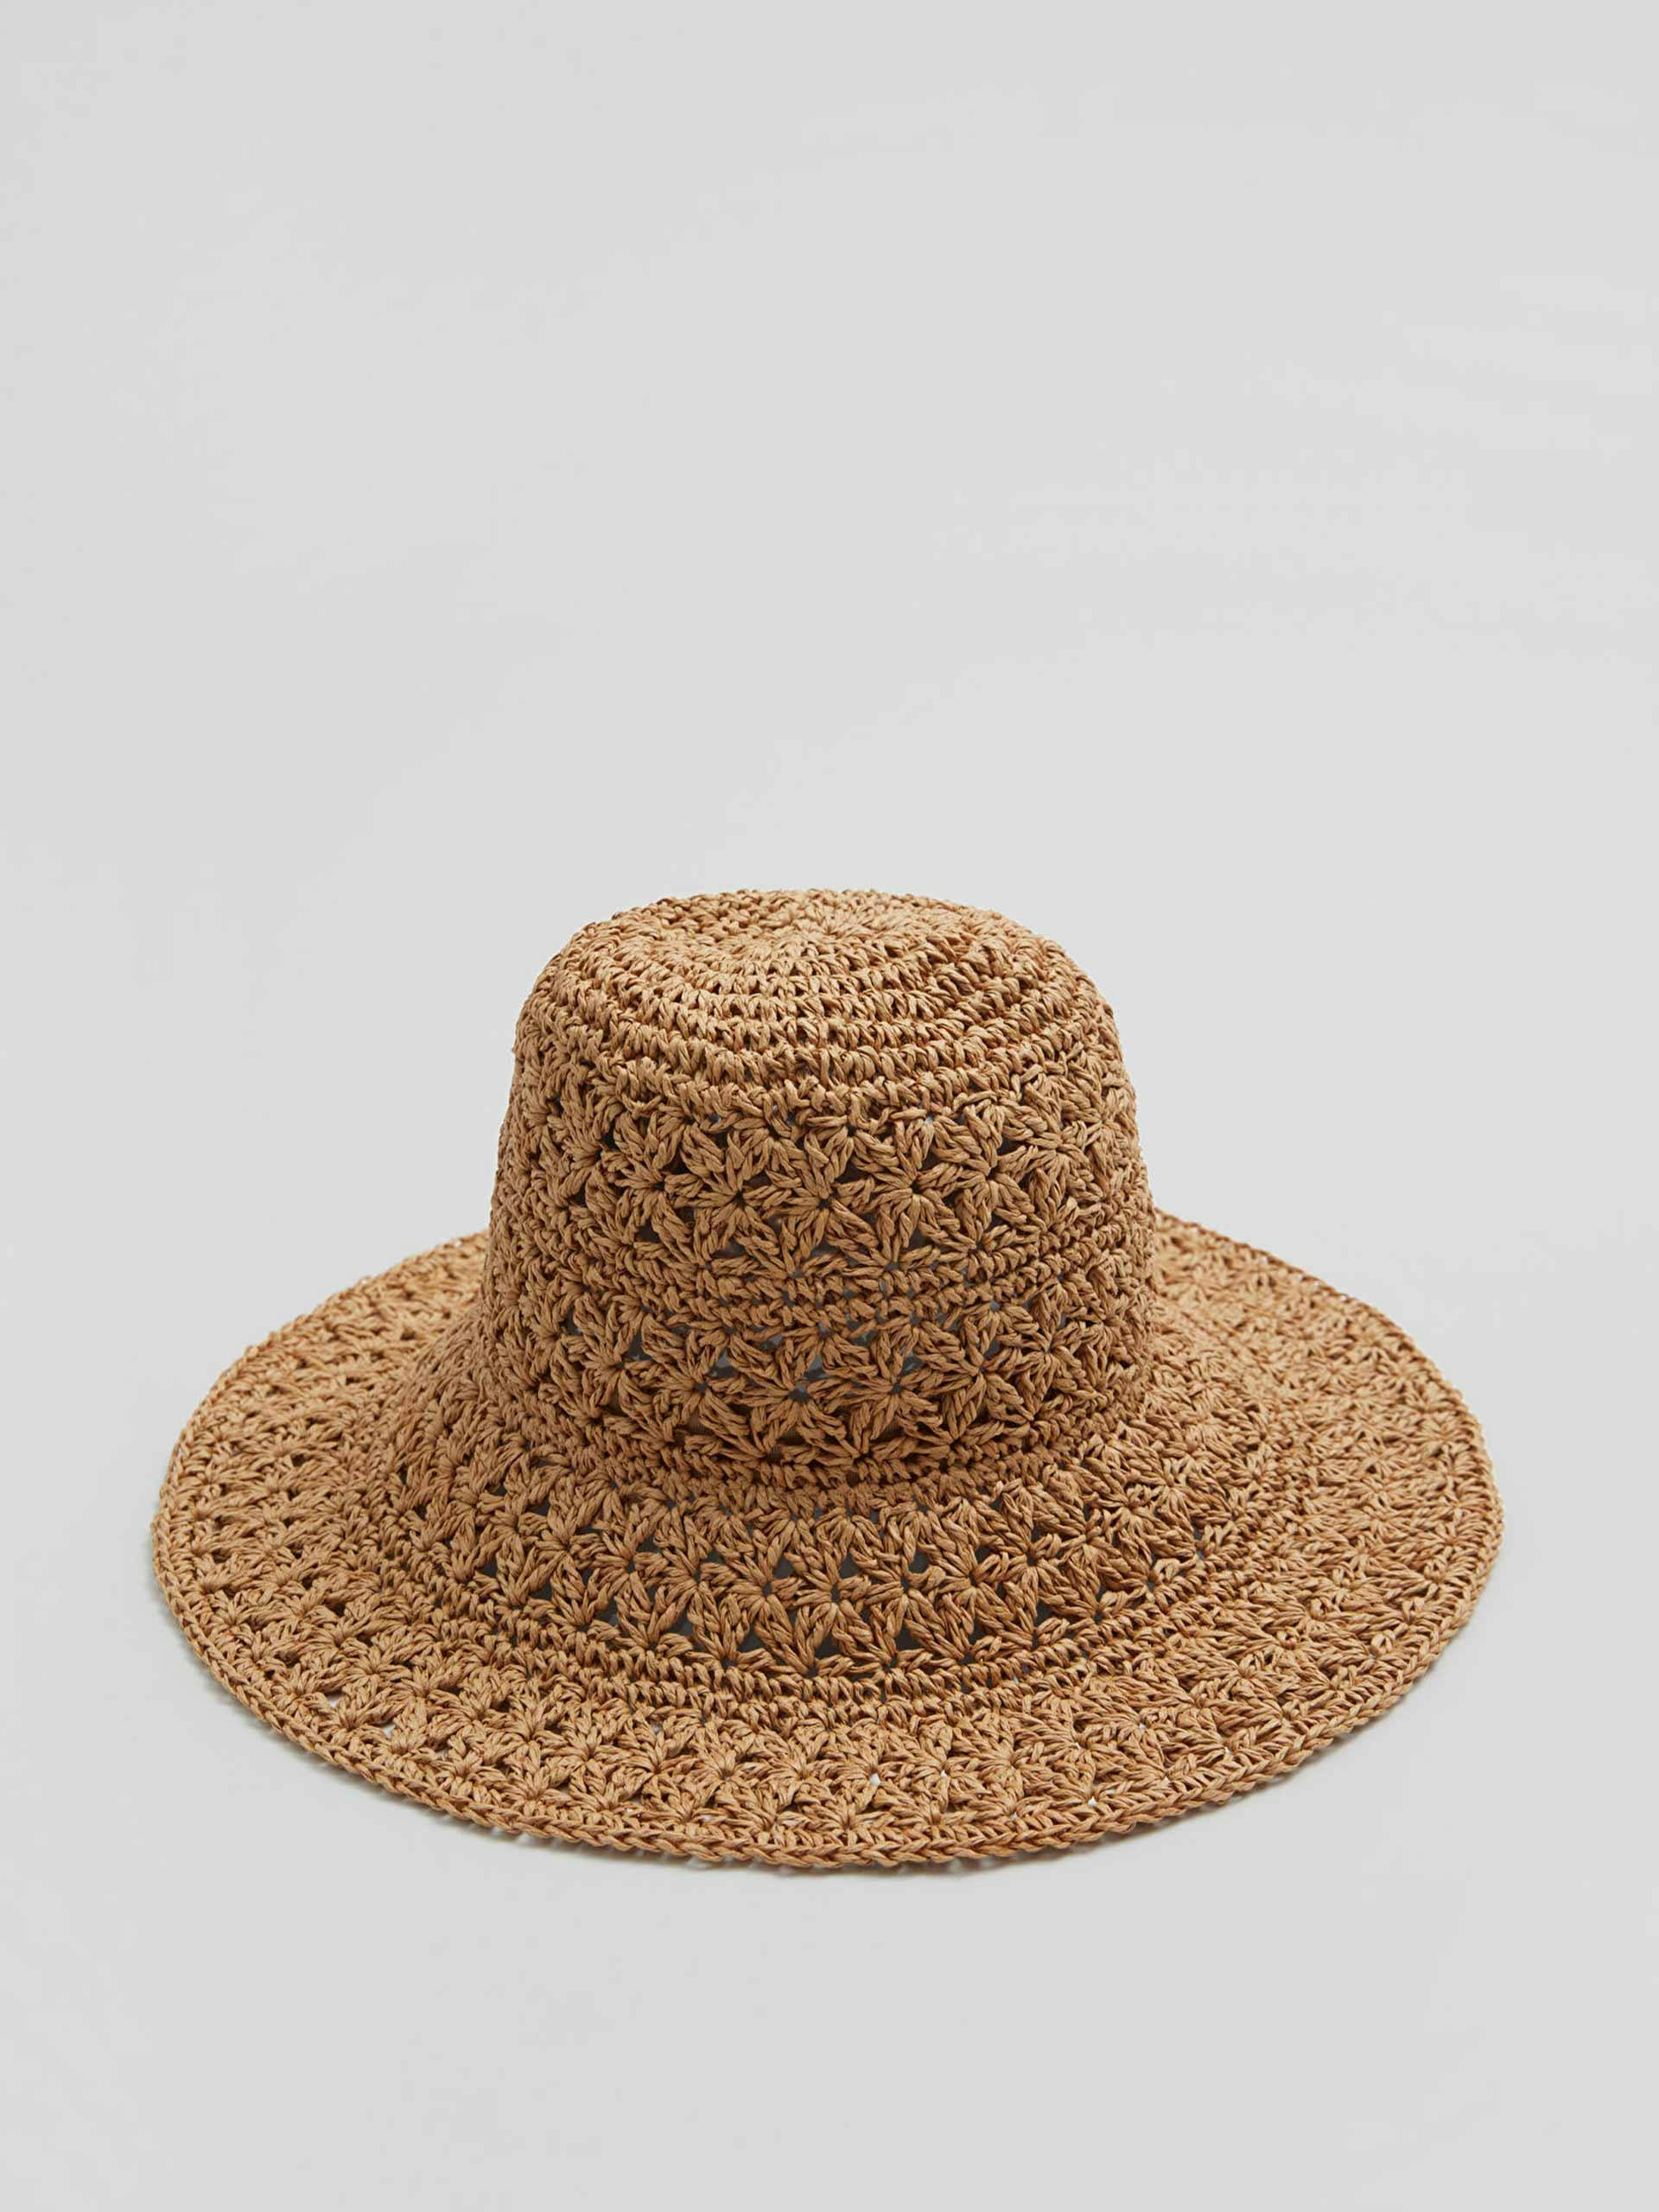 Crochet straw hat